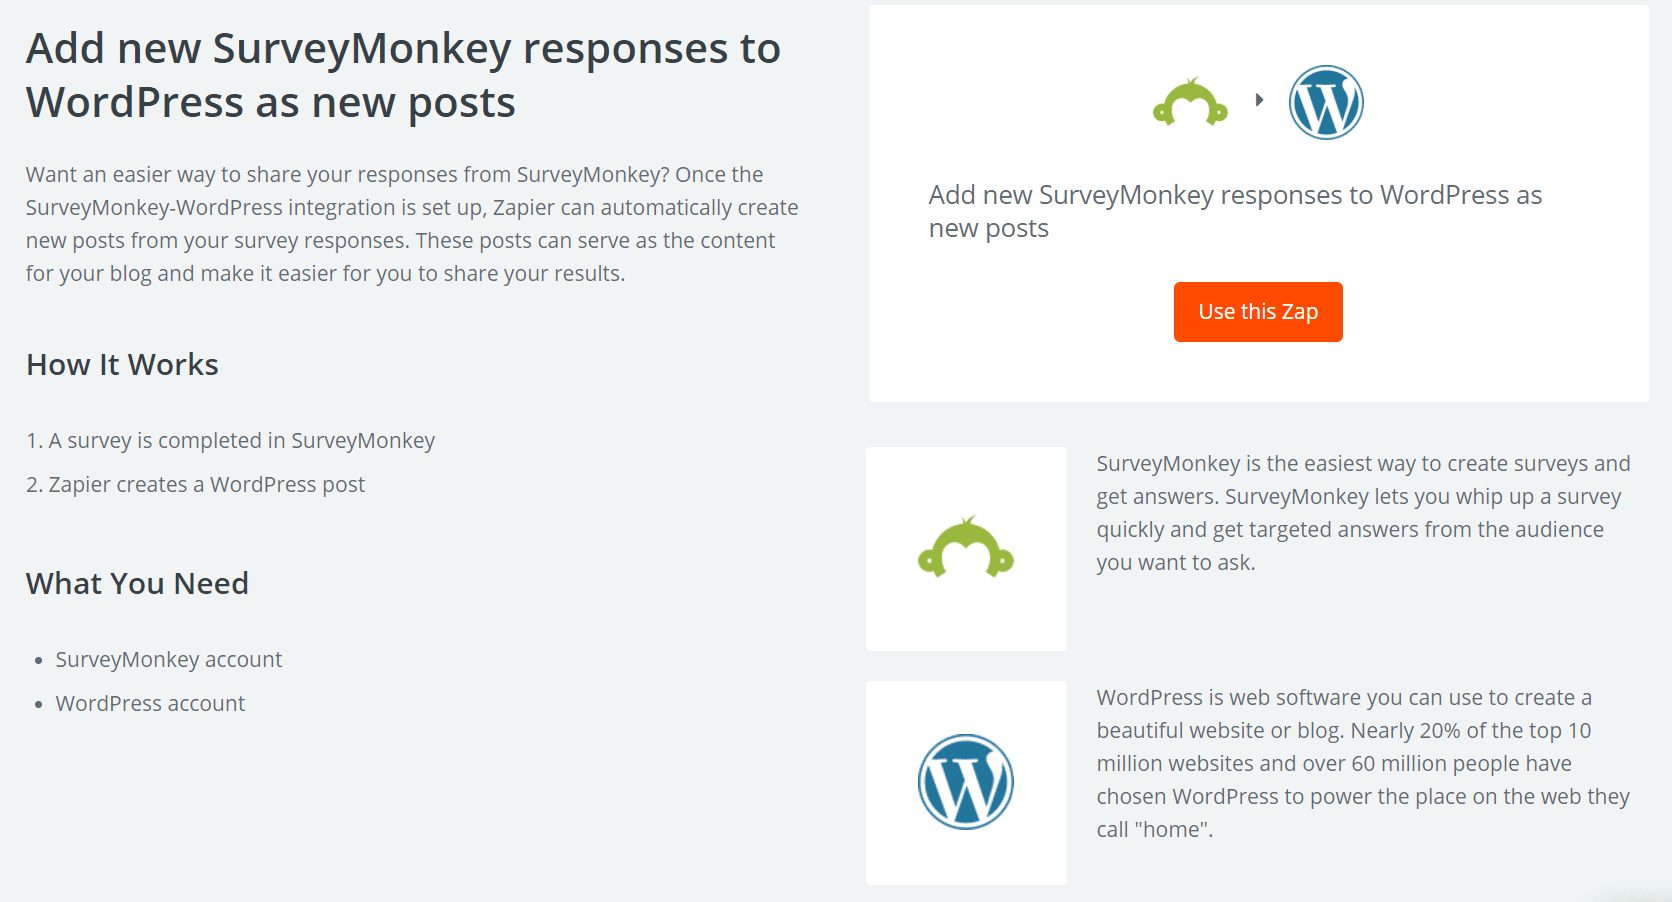 The SurveyMonkey integration Zap.